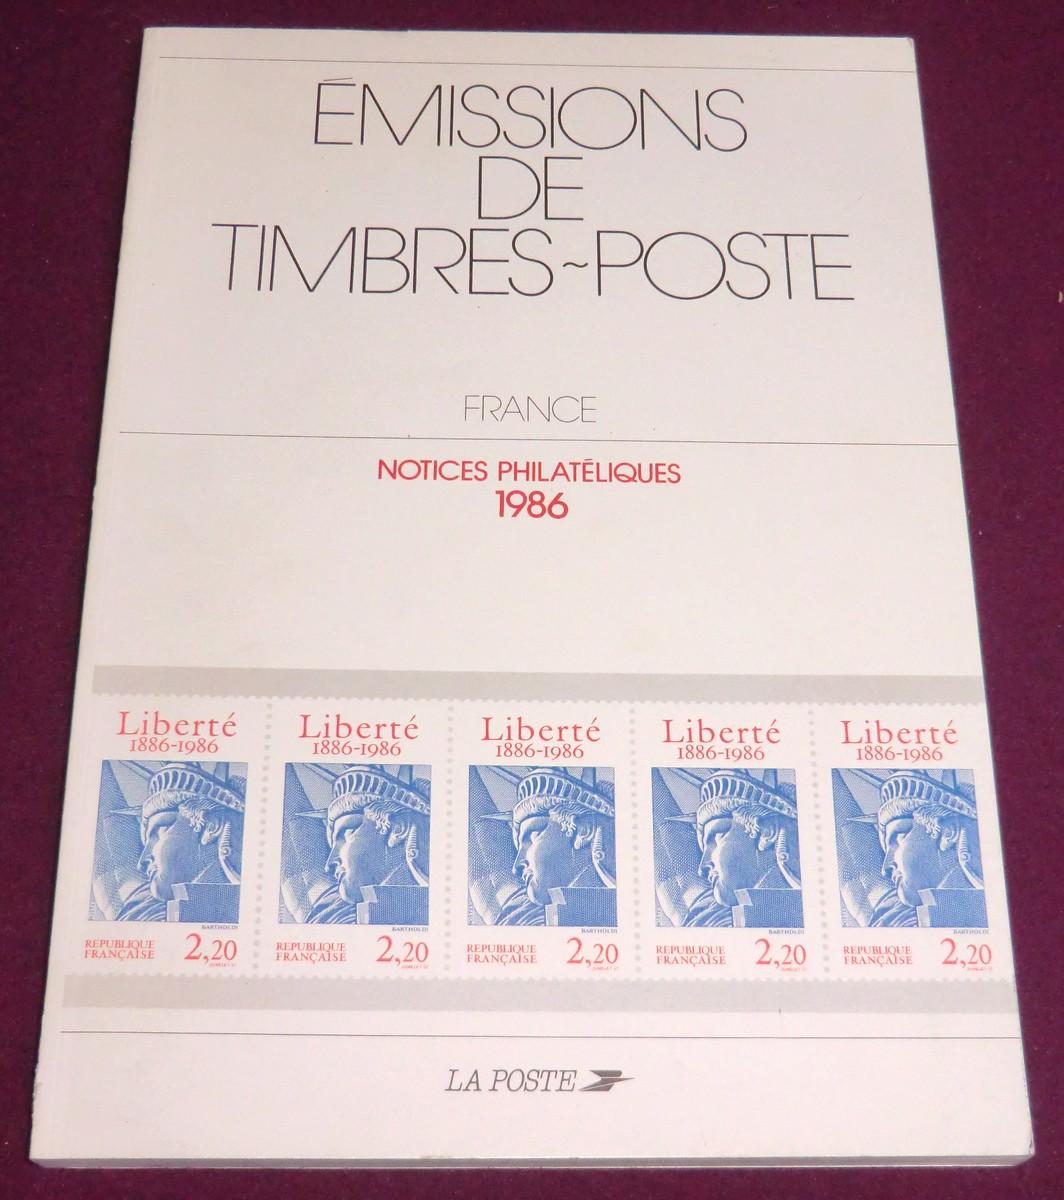 EMISSIONS DE TIMBRES-POSTE France - Notices philatéliques 1986